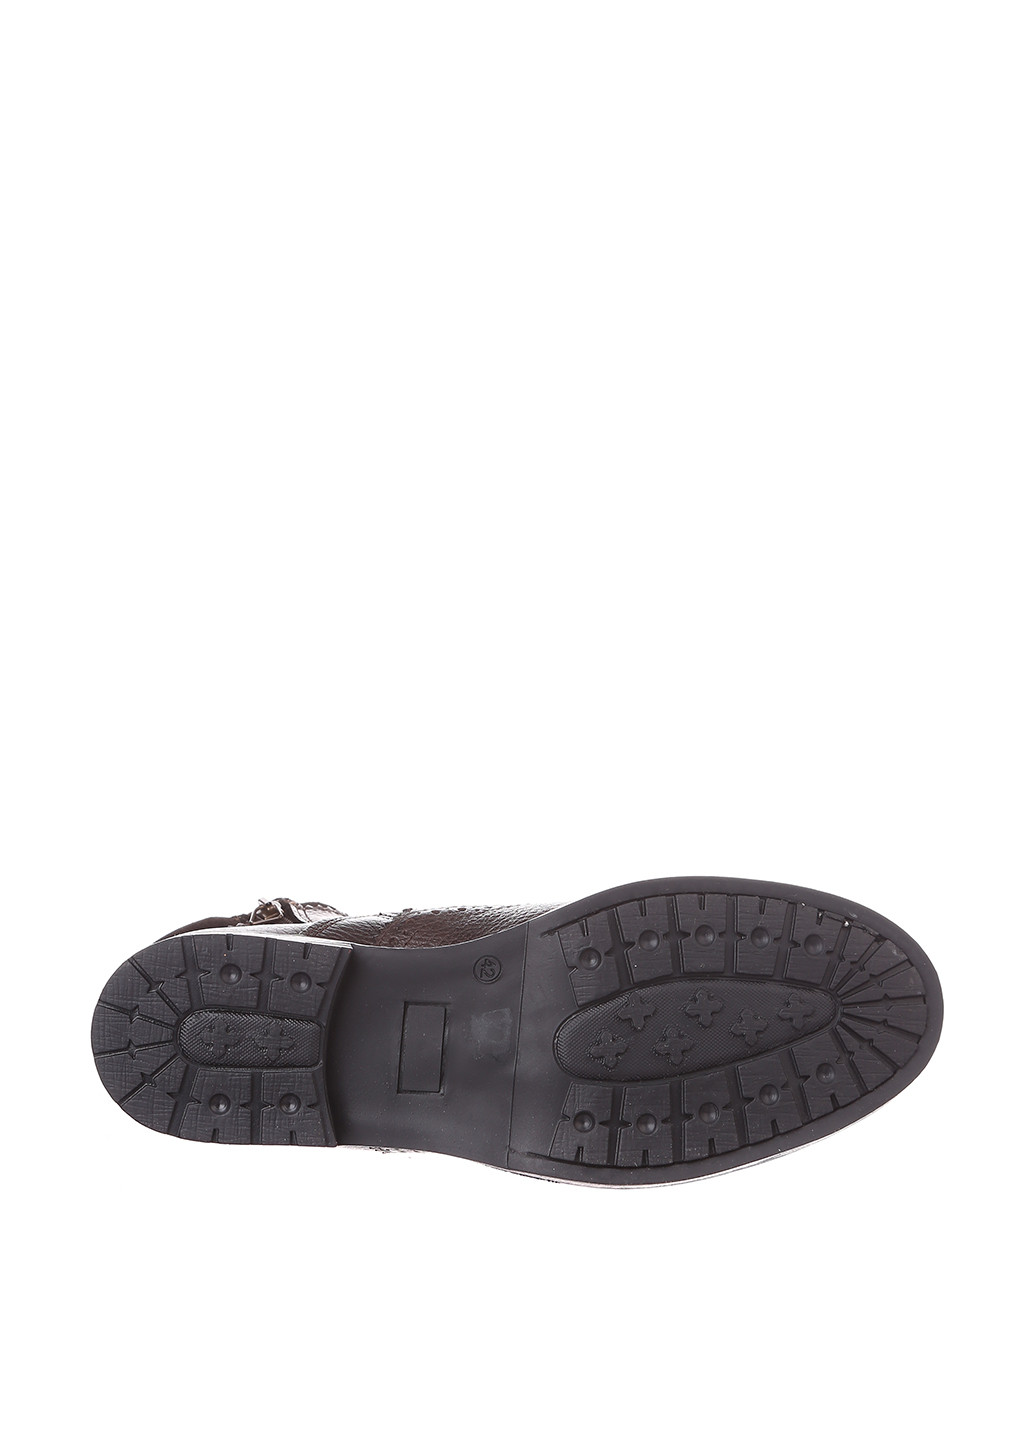 Черные осенние ботинки броги Portugal